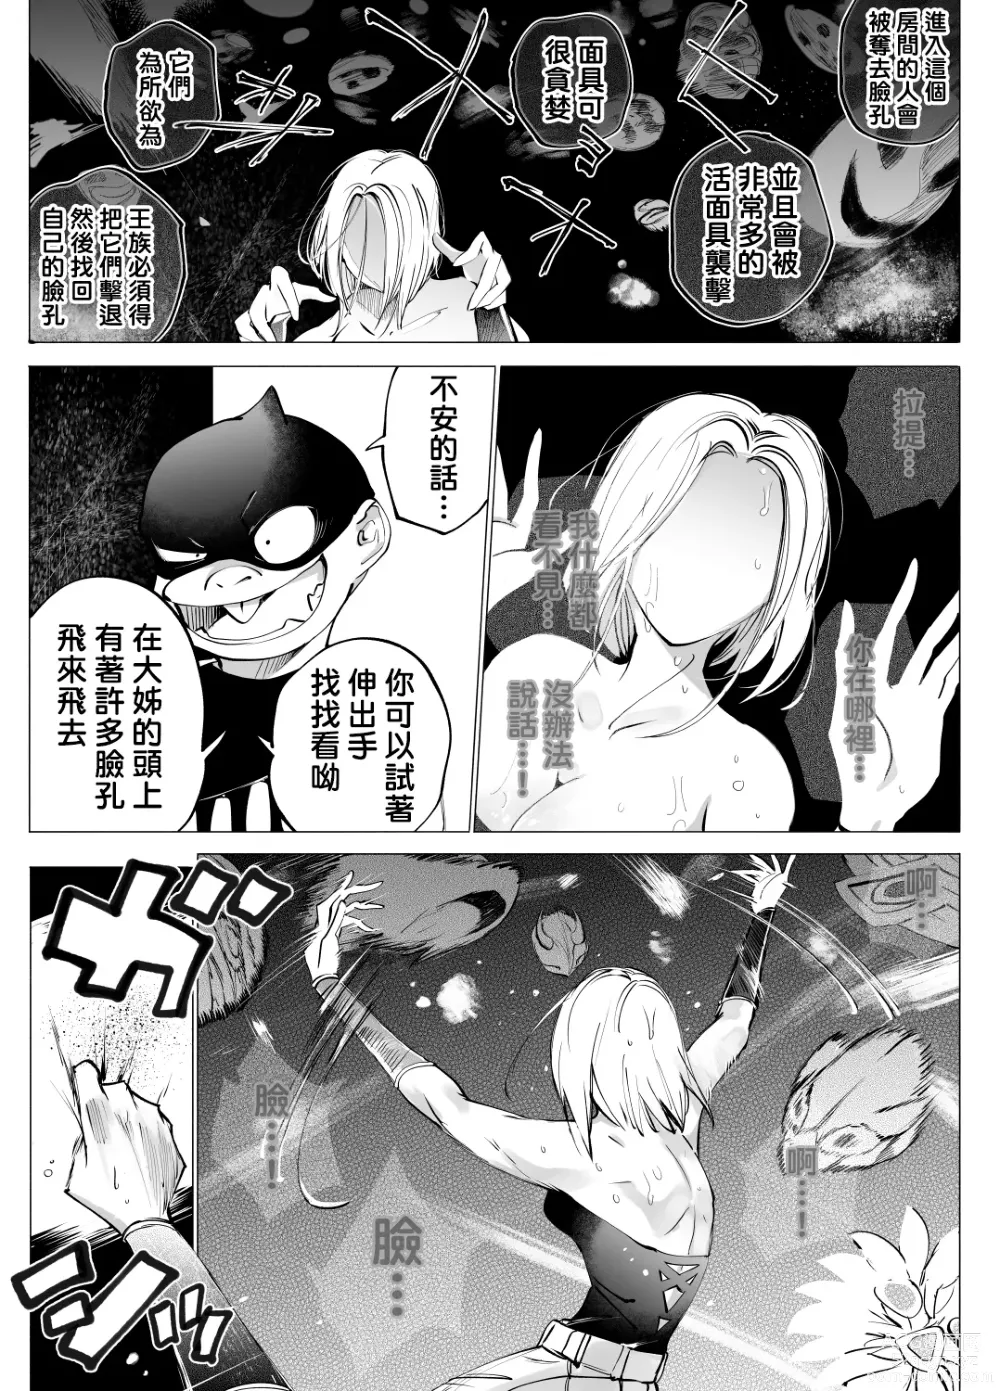 Page 3 of doujinshi 盗贼与面具遗迹